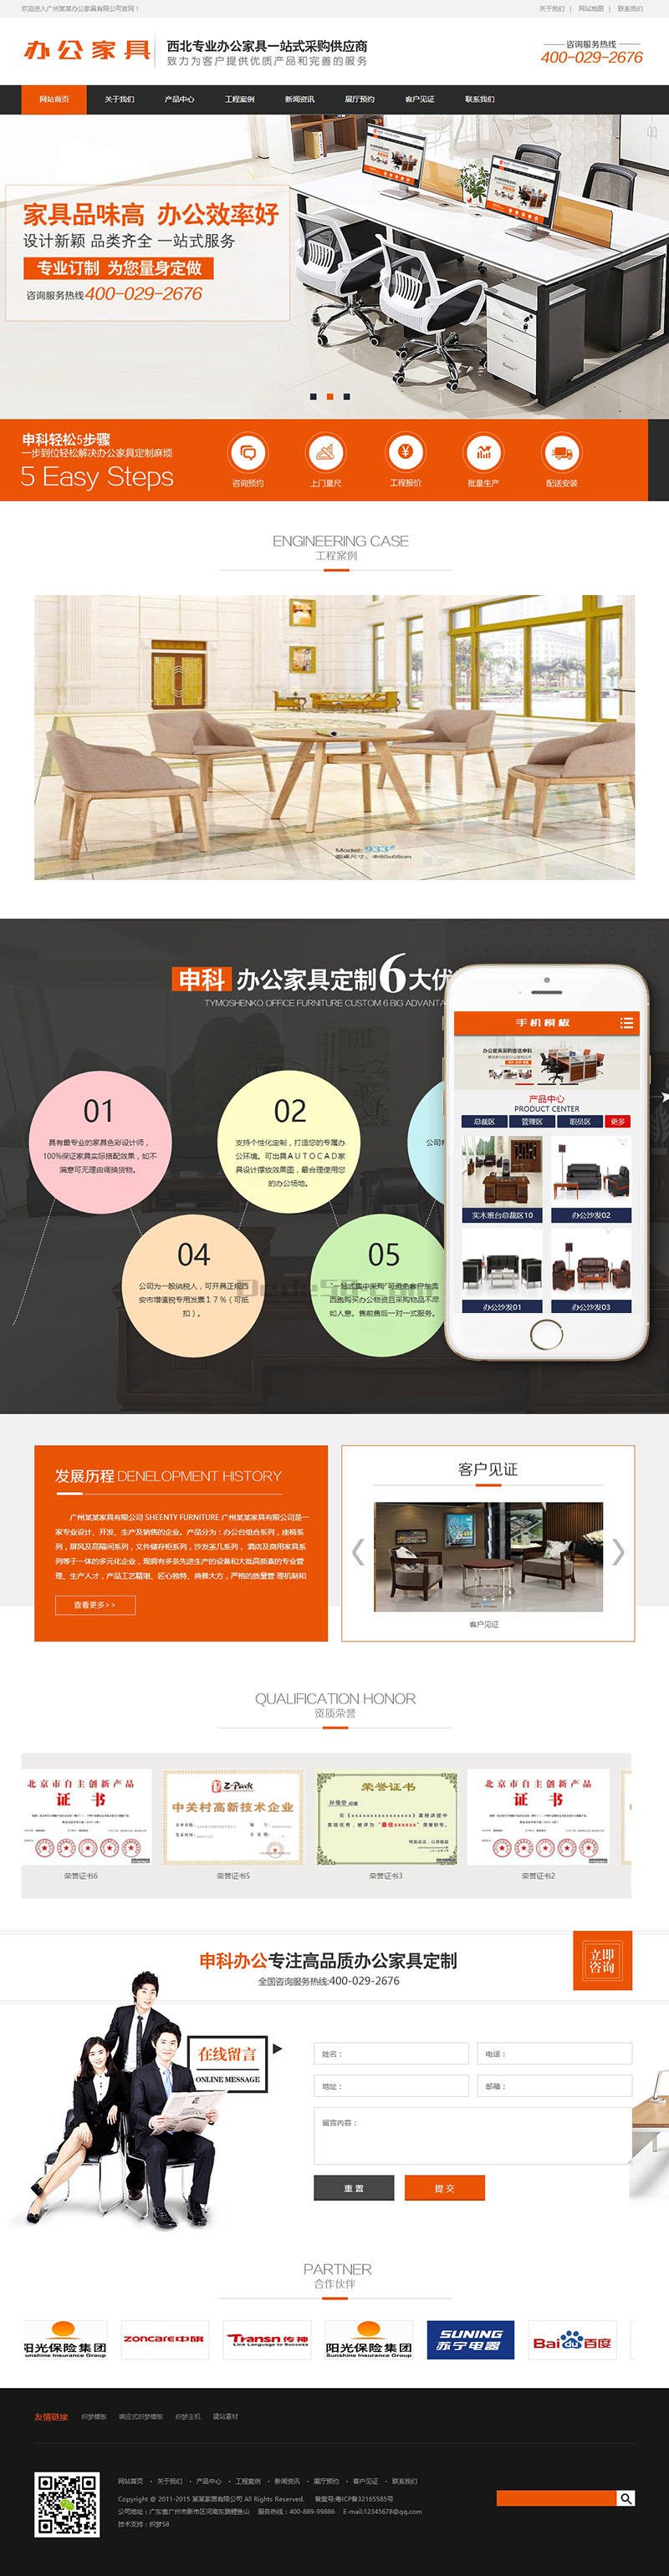 营销型办公家居家具产品类网站织梦模板(带手机端) dedecms织梦模板免费下载